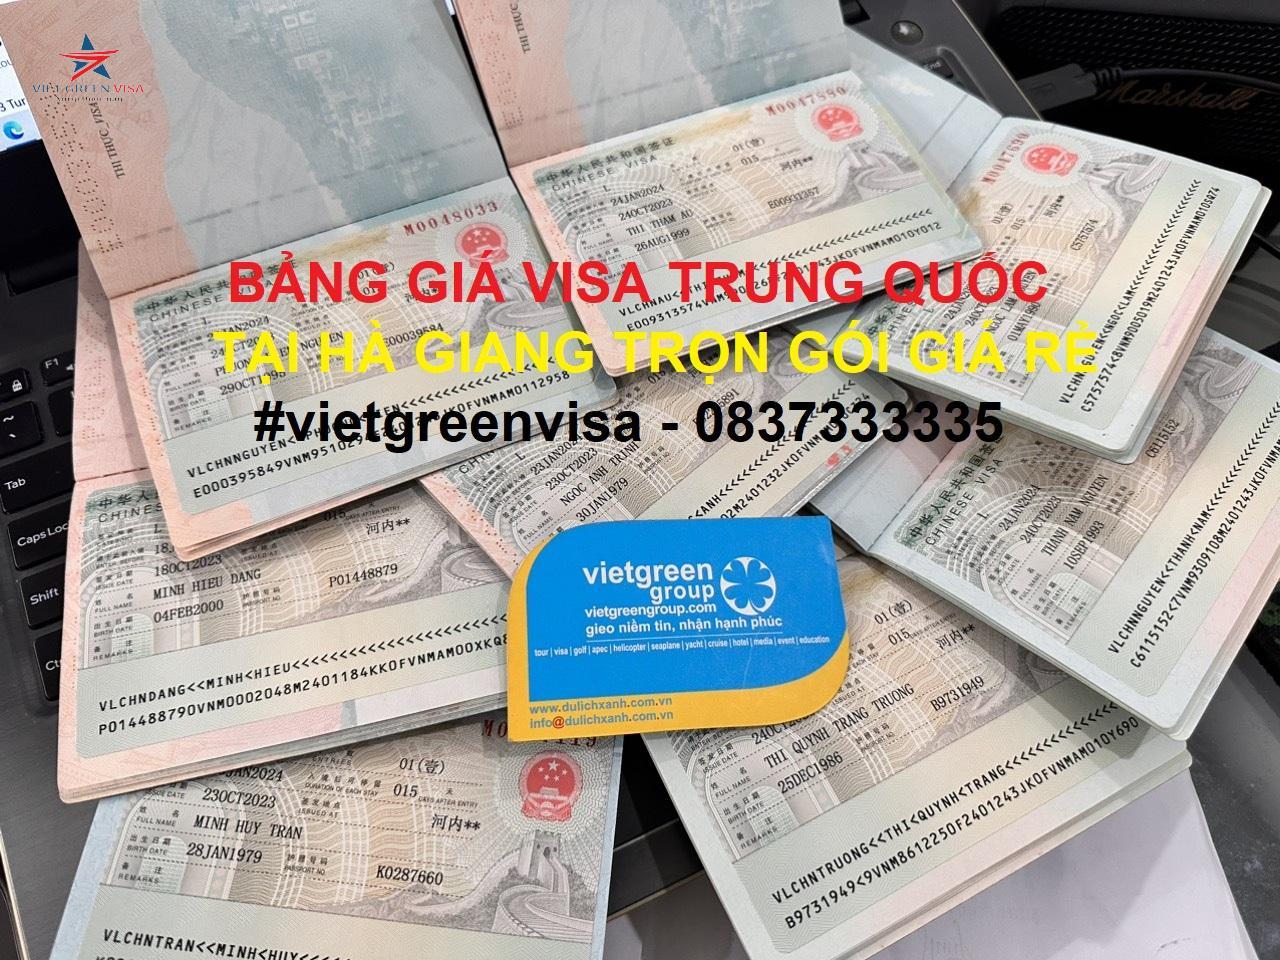 Dịch vụ xin visa Trung Quốc tại Hà Giang uy tín